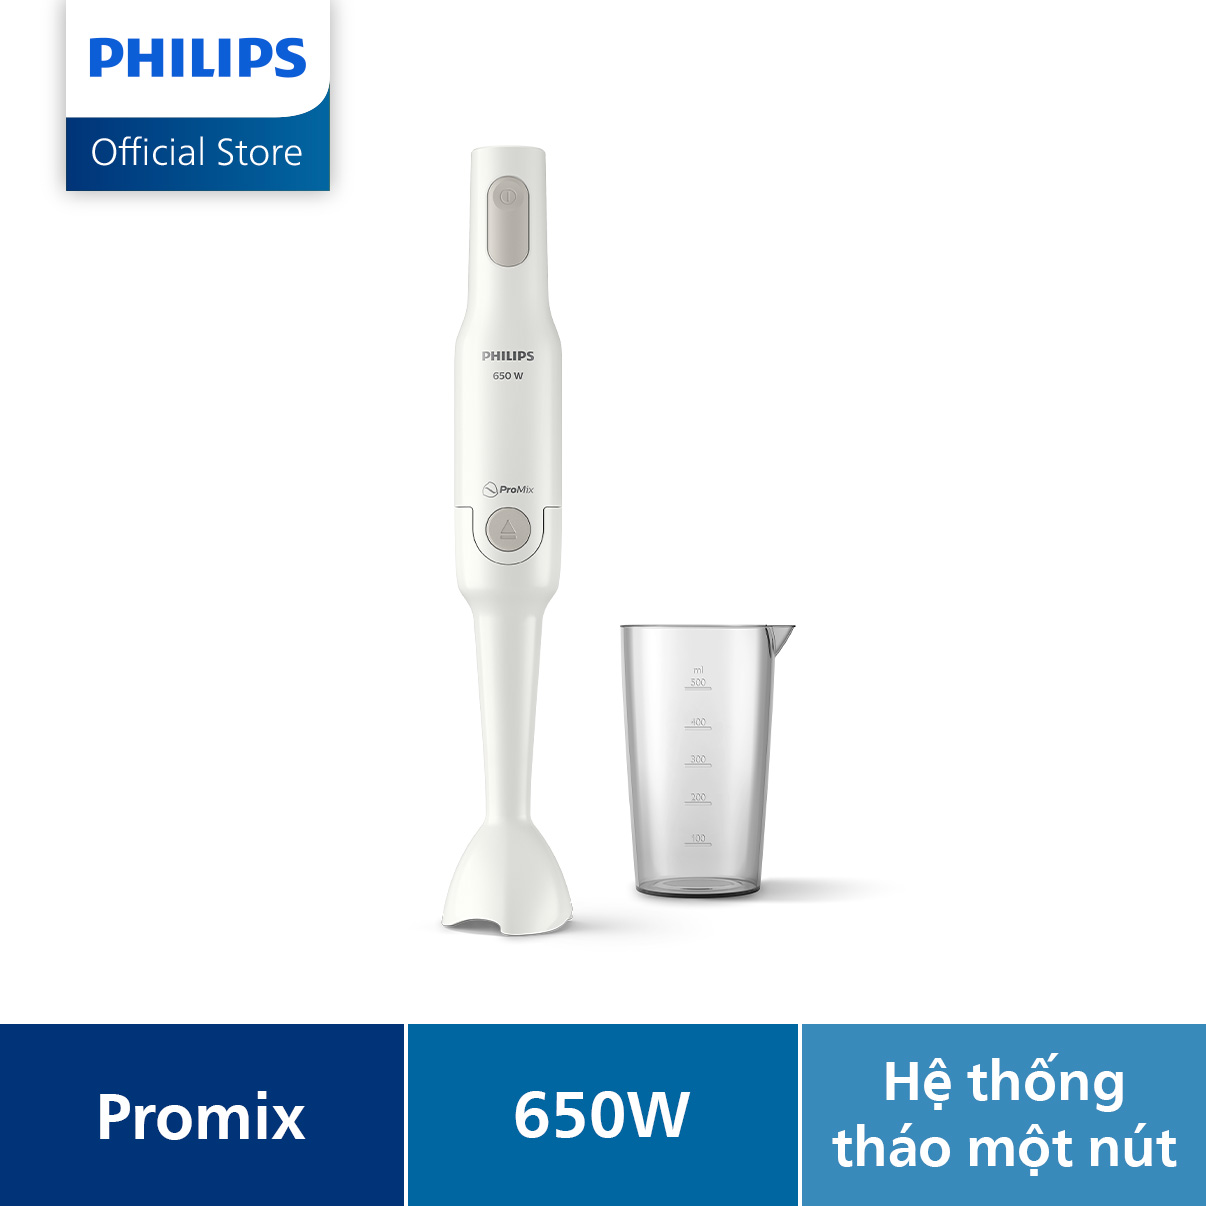 Máy xay cầm tay PHILIPS Promix HR2531 /00 650W thanh tay nhựa - Hàng Chính Hãng